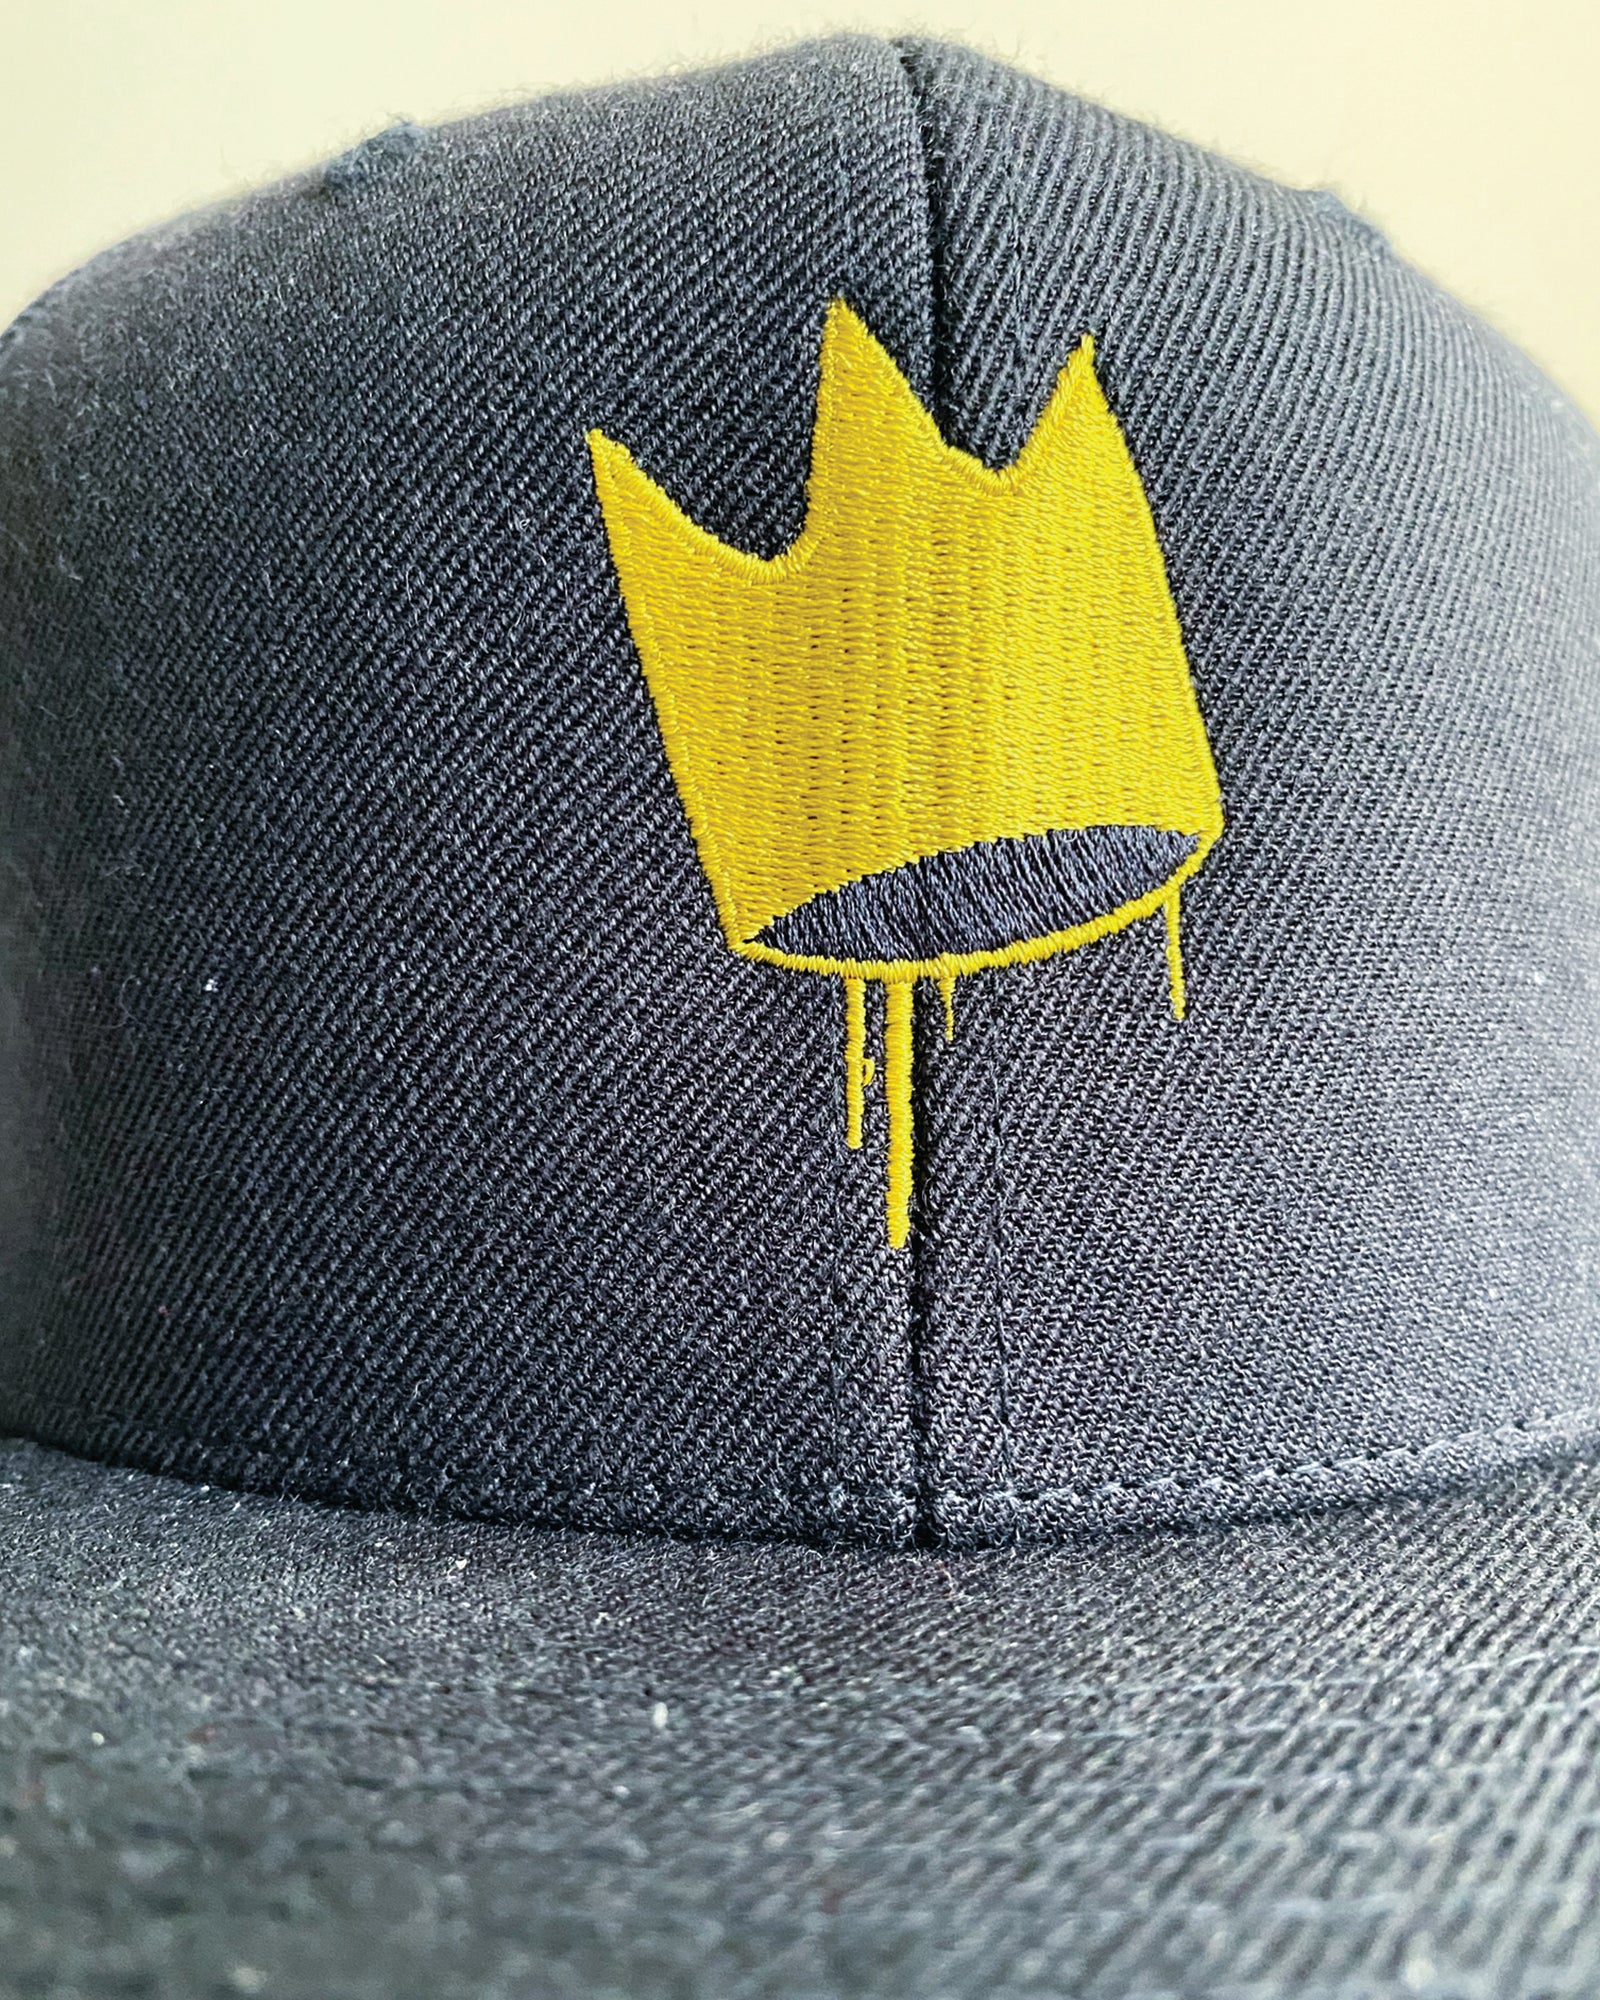 "Crown" VVS Embroidered Black Snapback